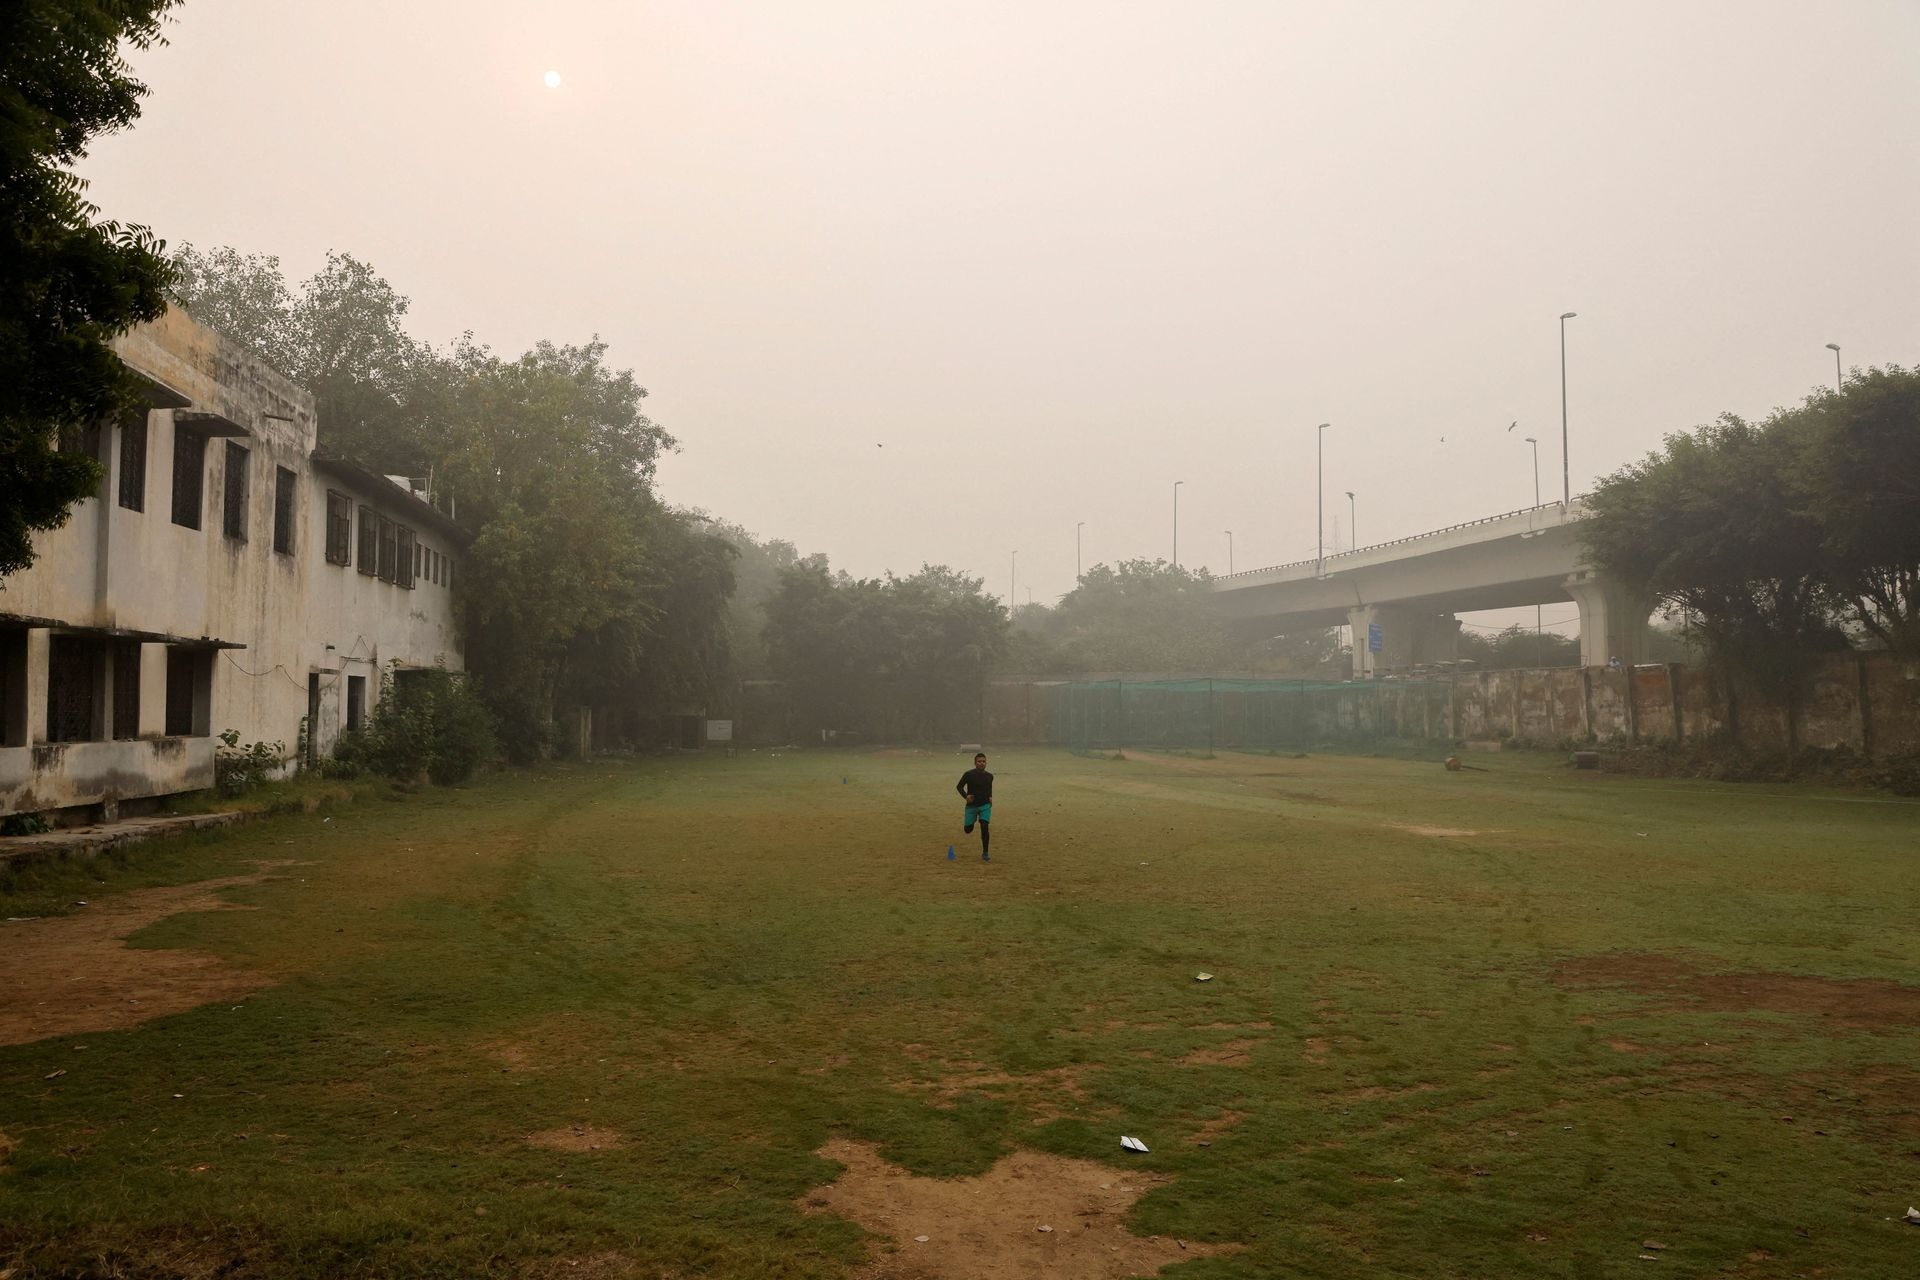 Siêu đô thị ô nhiễm nhất thế giới lại chìm trong sương mù, khói bụi  - Ảnh 4.